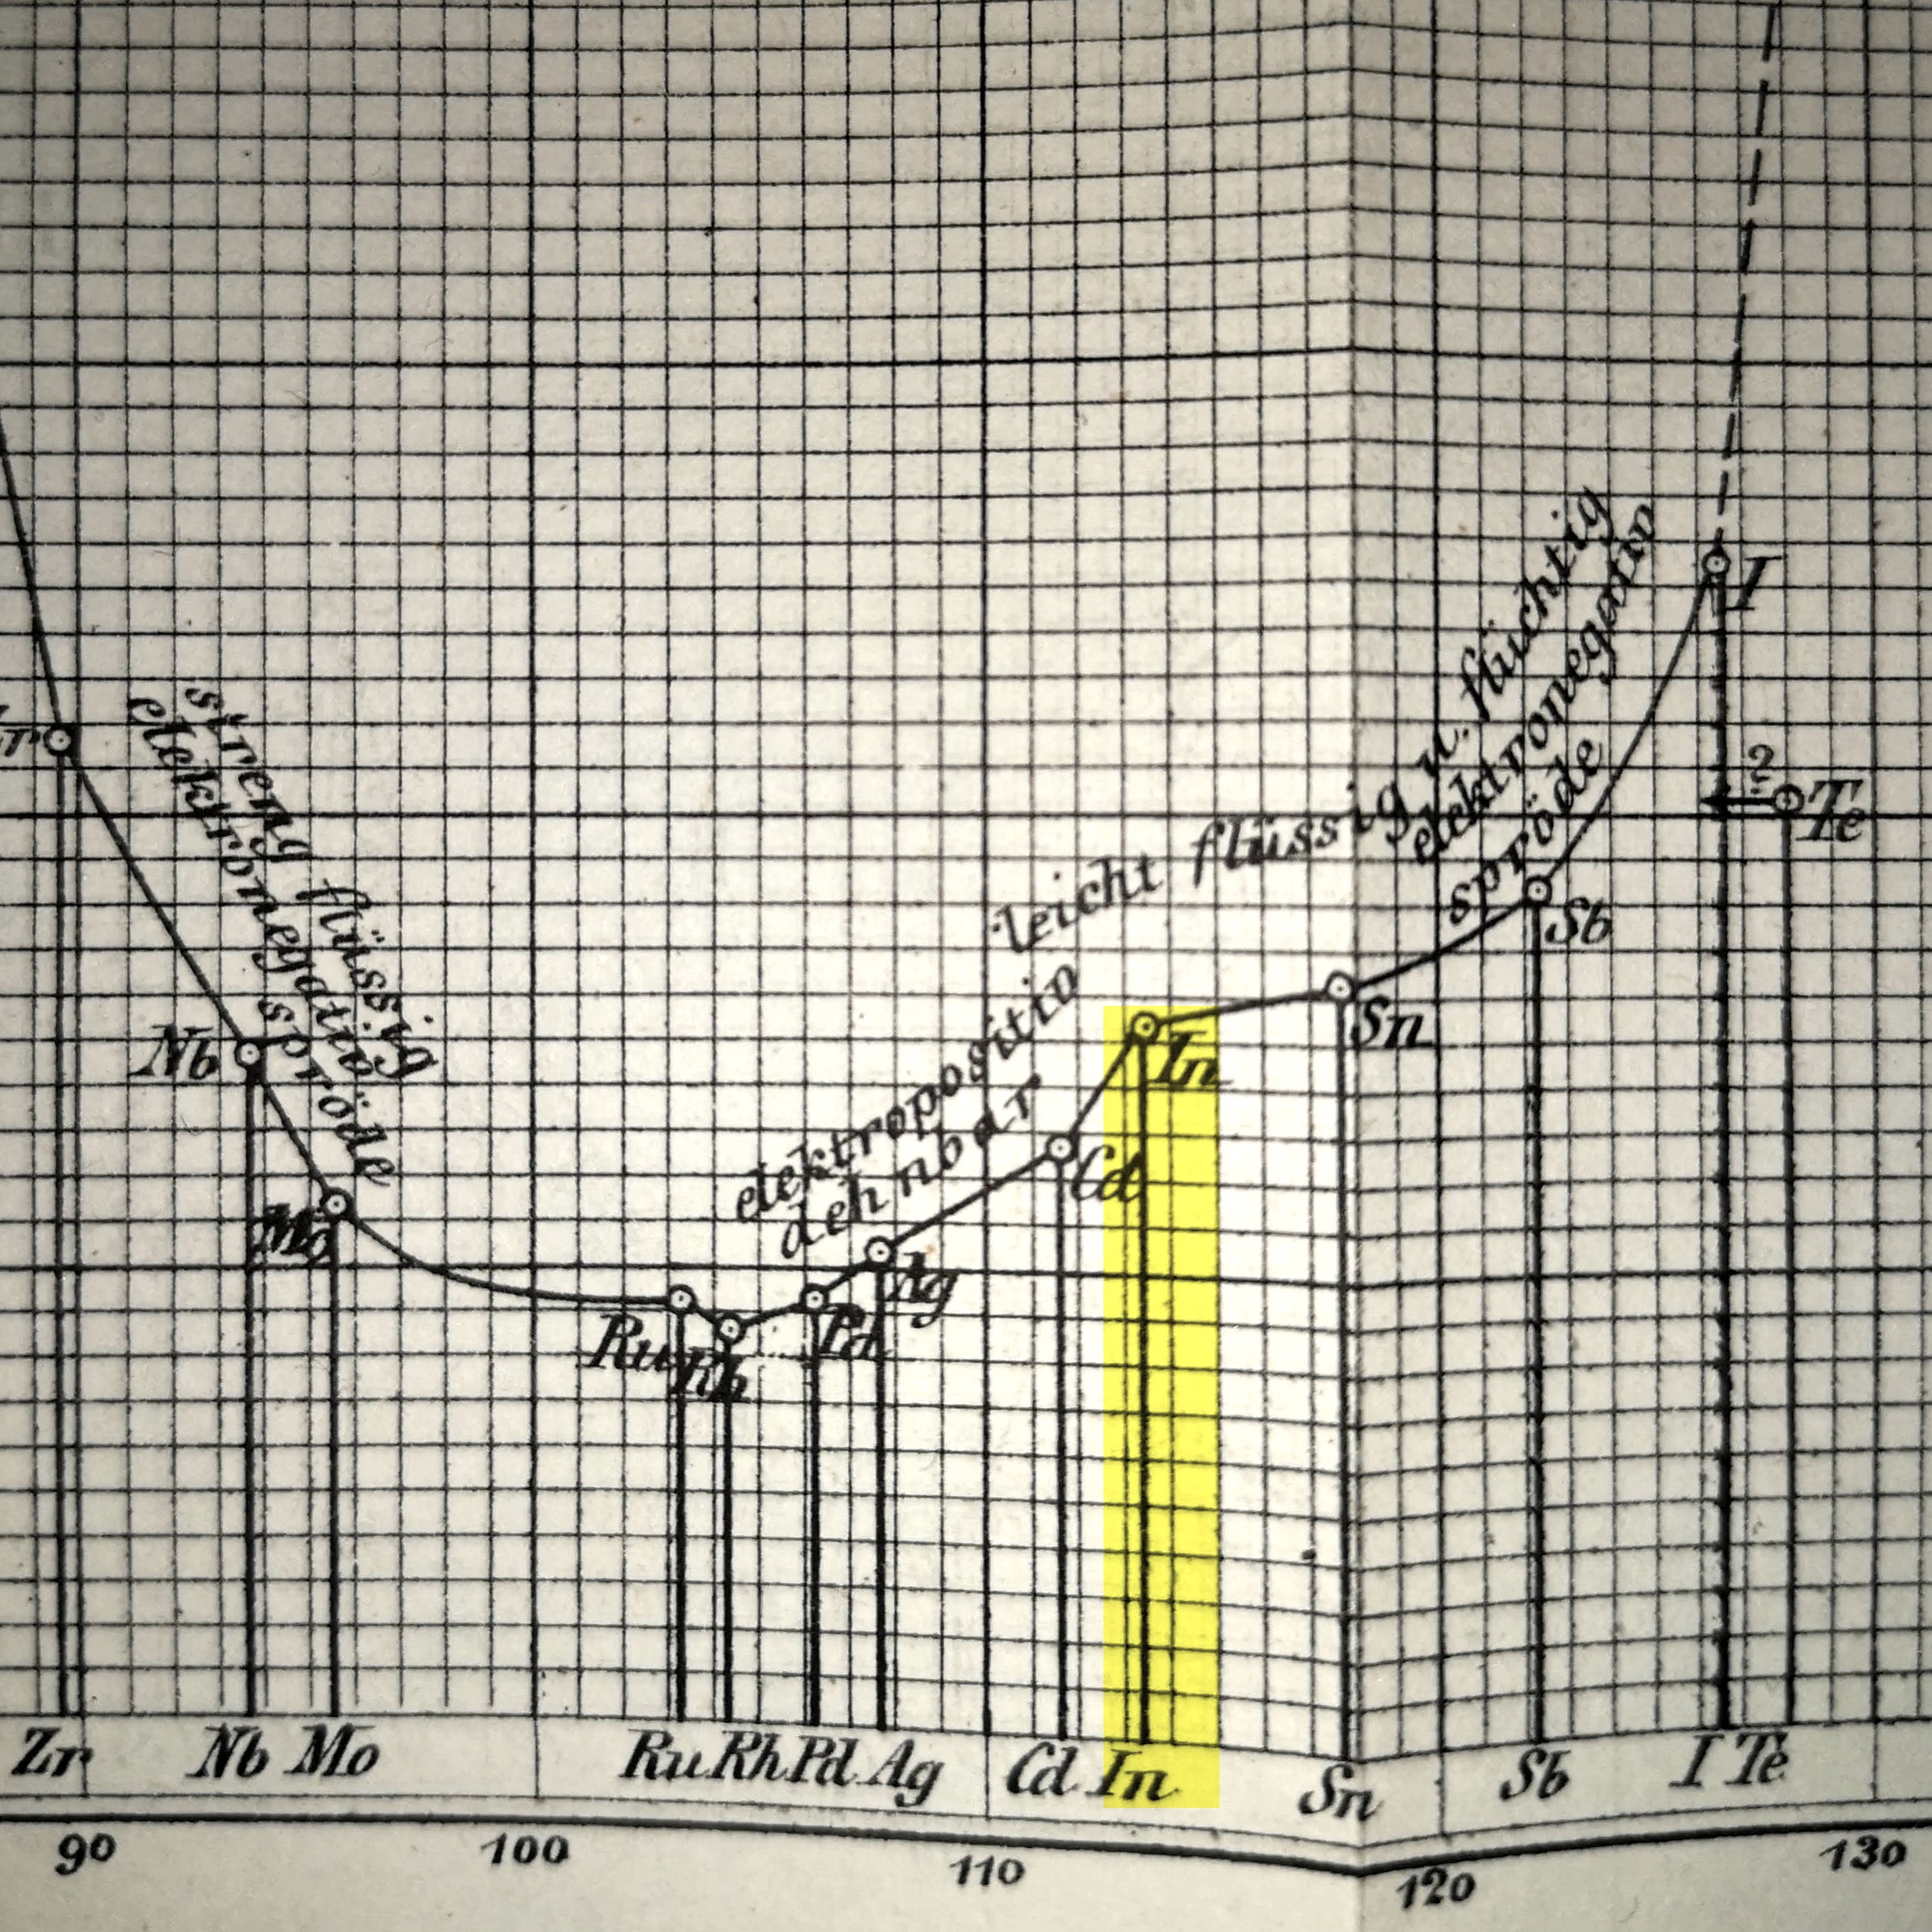 Indium in Meyer's 1870 graph.